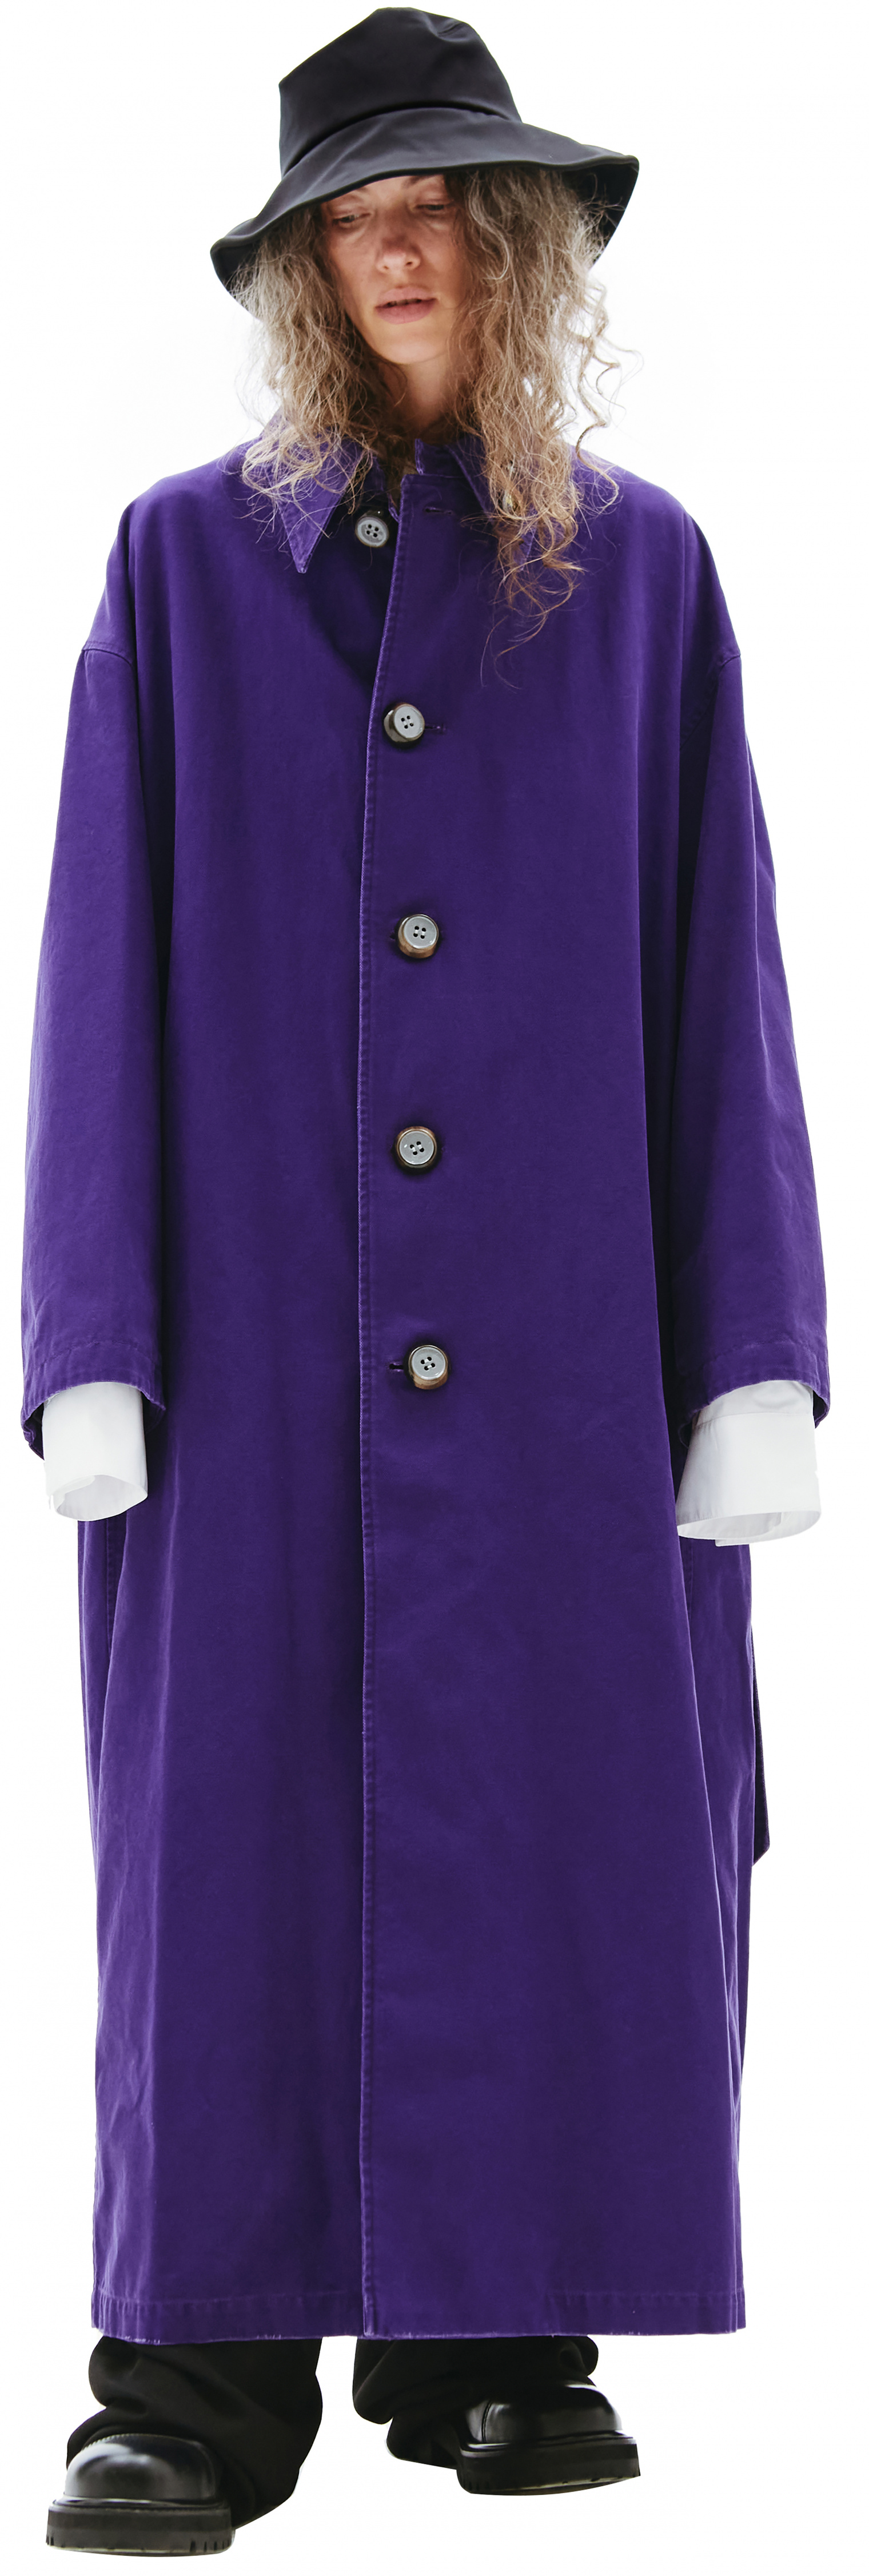 Женское фиолетовое пальто оверсайз Raf Simons — купить за 311 900 руб. в интернет-магазине SV77, арт. 211-M630-10080-0050